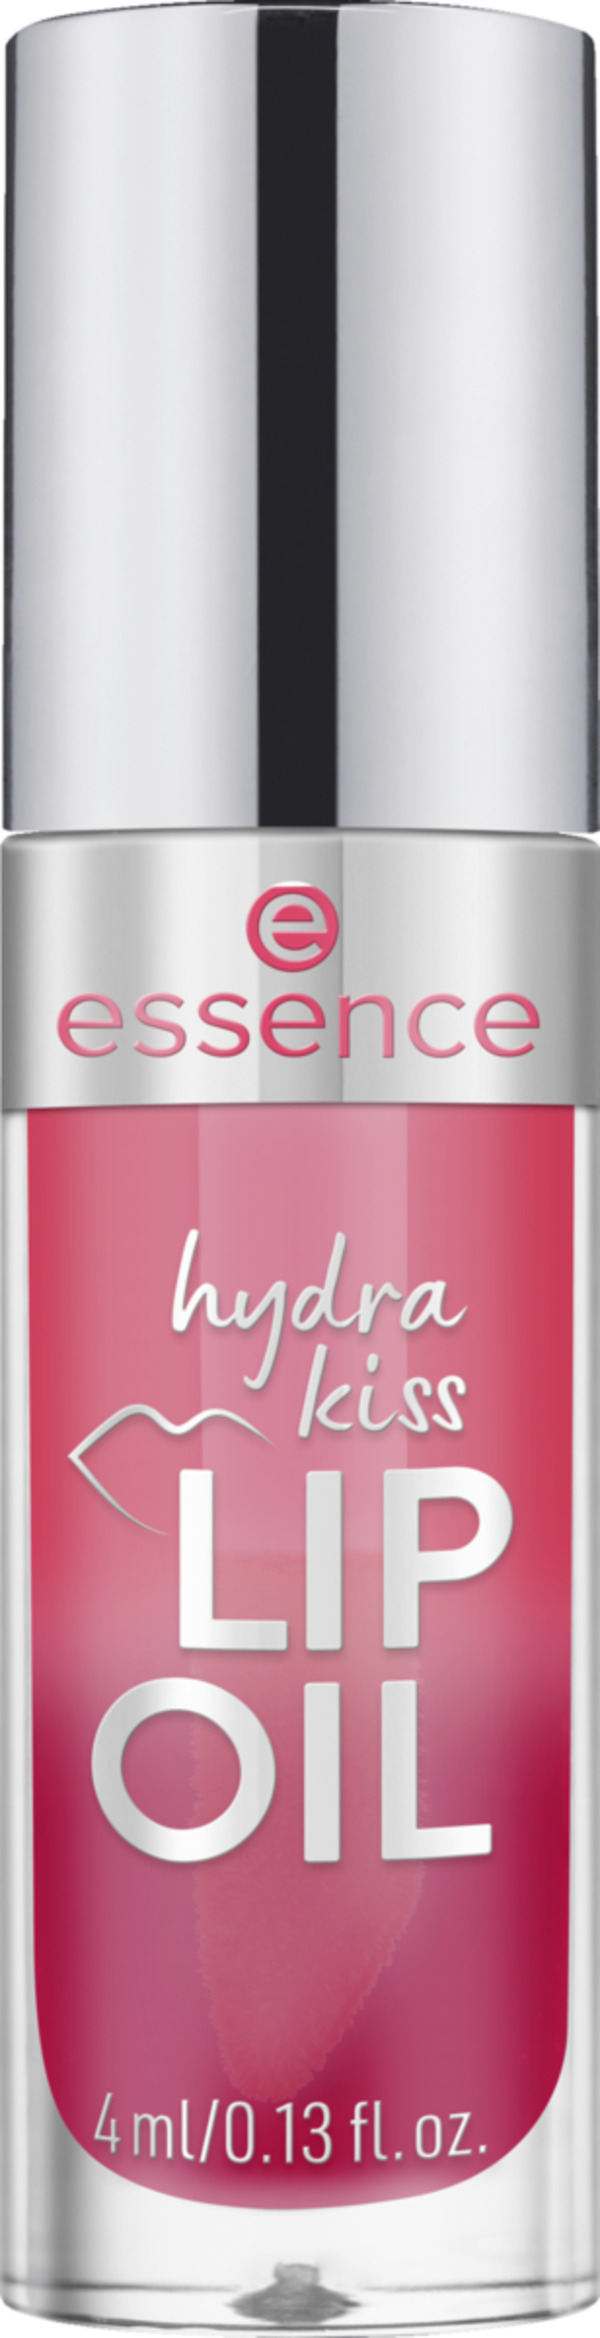 Bild 1 von essence Hydra kiss lip oil 03 Pink Champagne